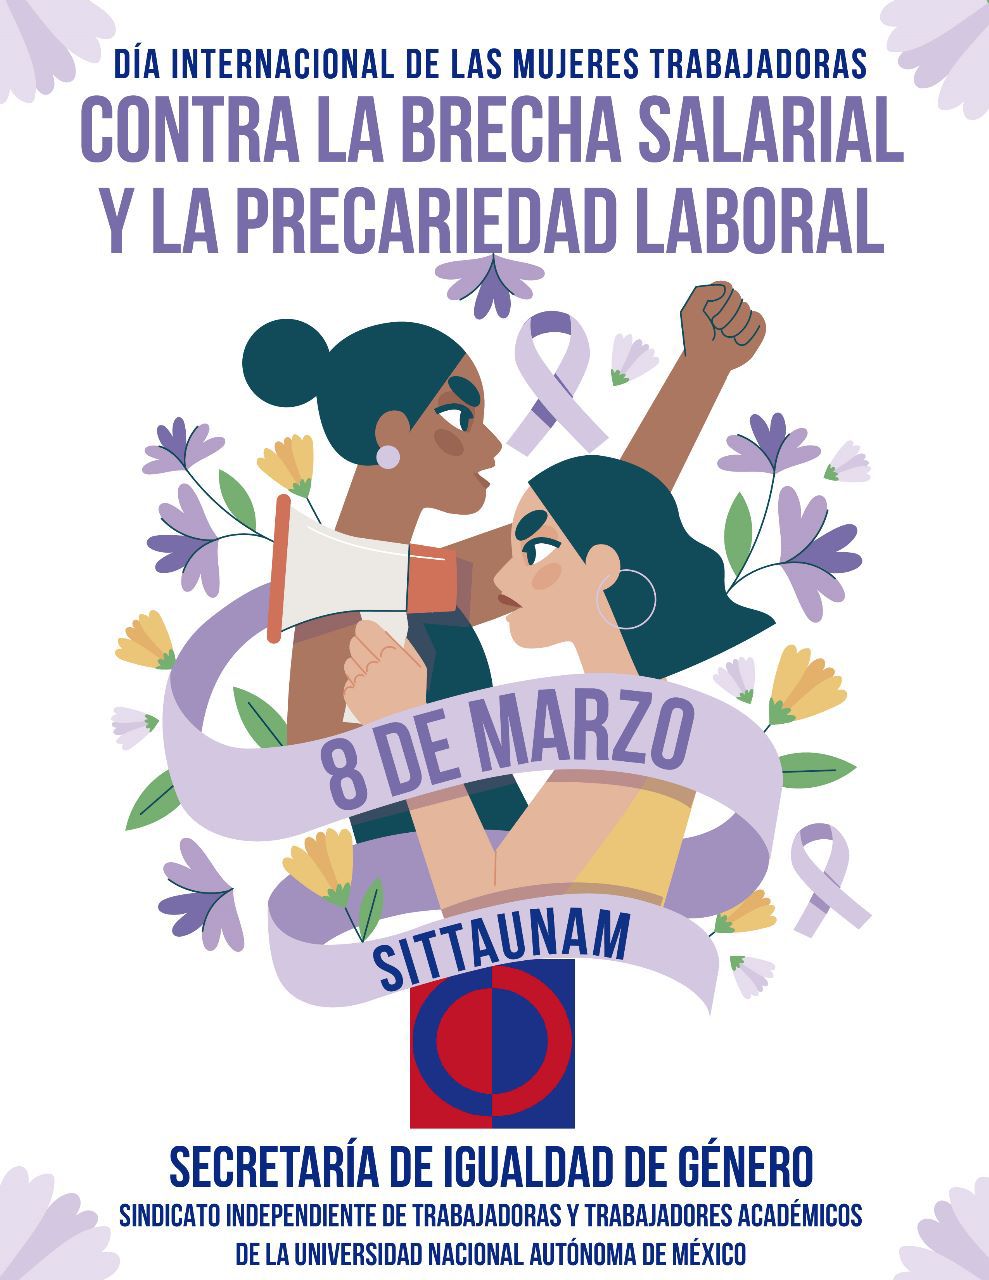 Pronunciamiento de nuestra Secretaría de Igualdad de Género con motivo del 8 de marzo Día Internacional de las Mujeres Trabajadoras y respecto a la Consulta de Legitimación del CCT.